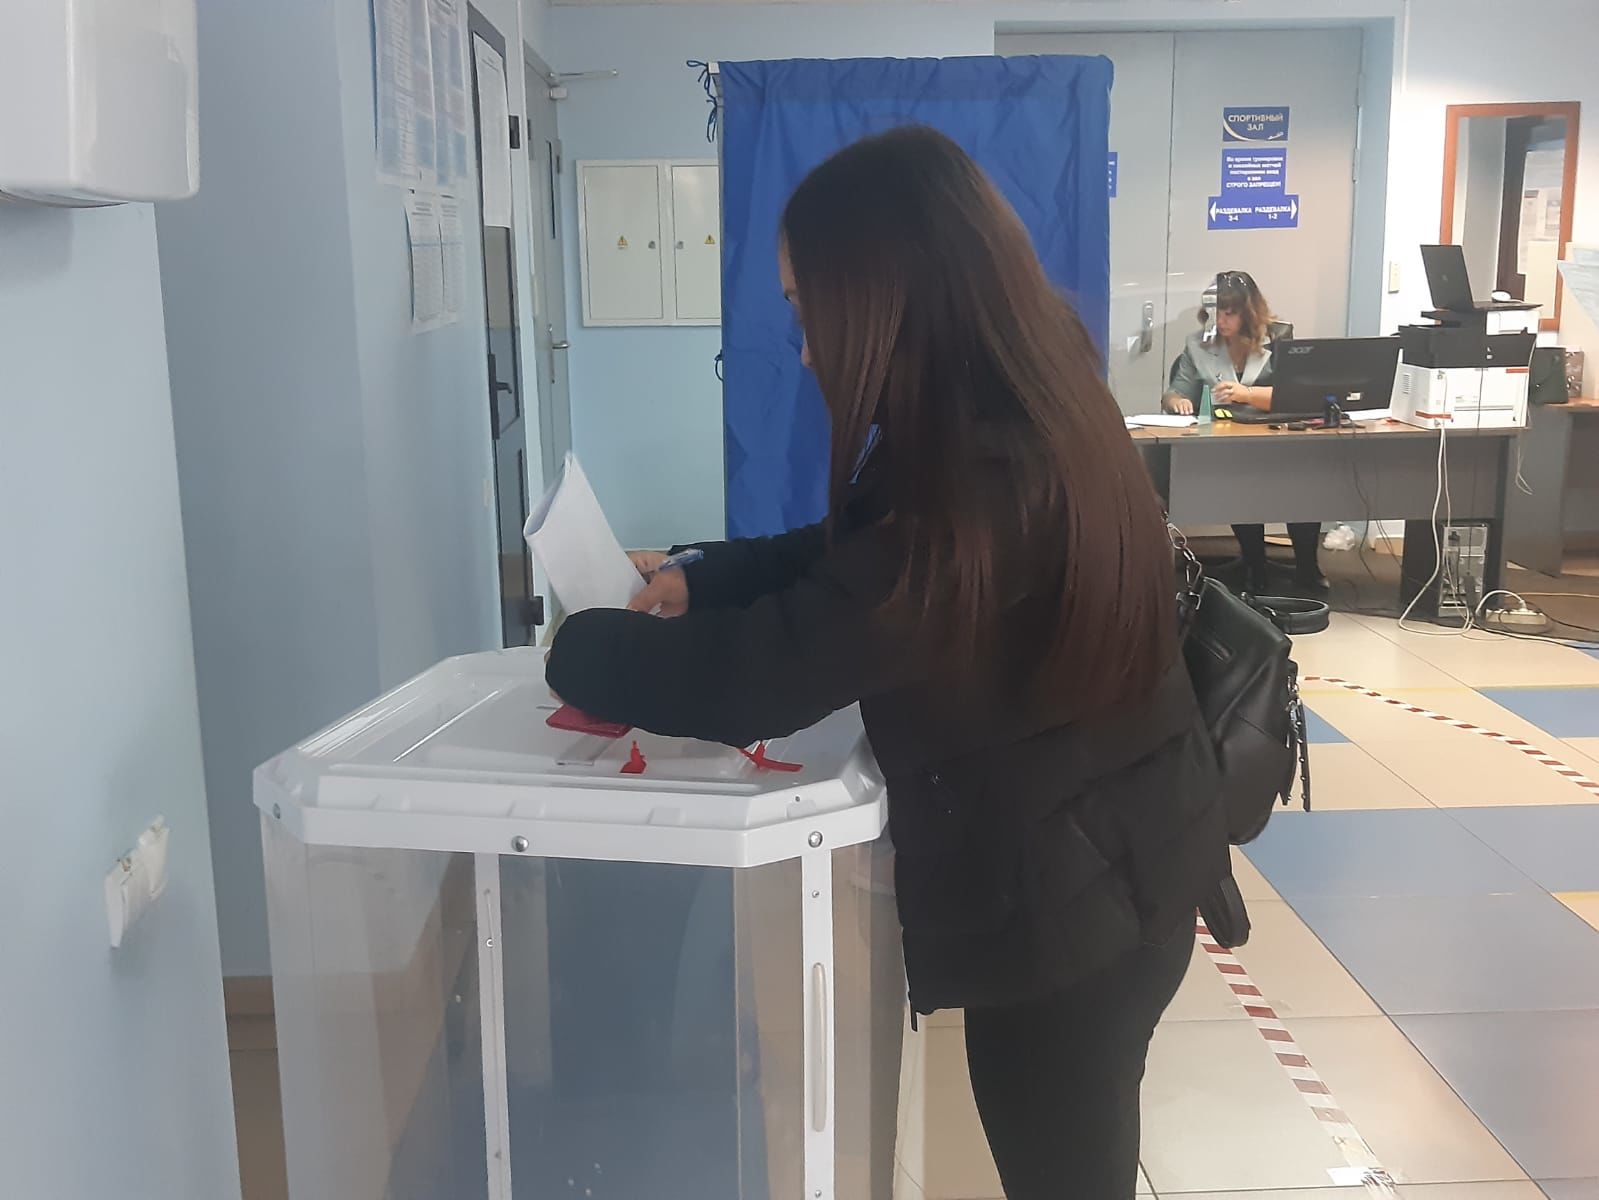 Все 34 участковые избирательные комиссии района работают в штатном режиме